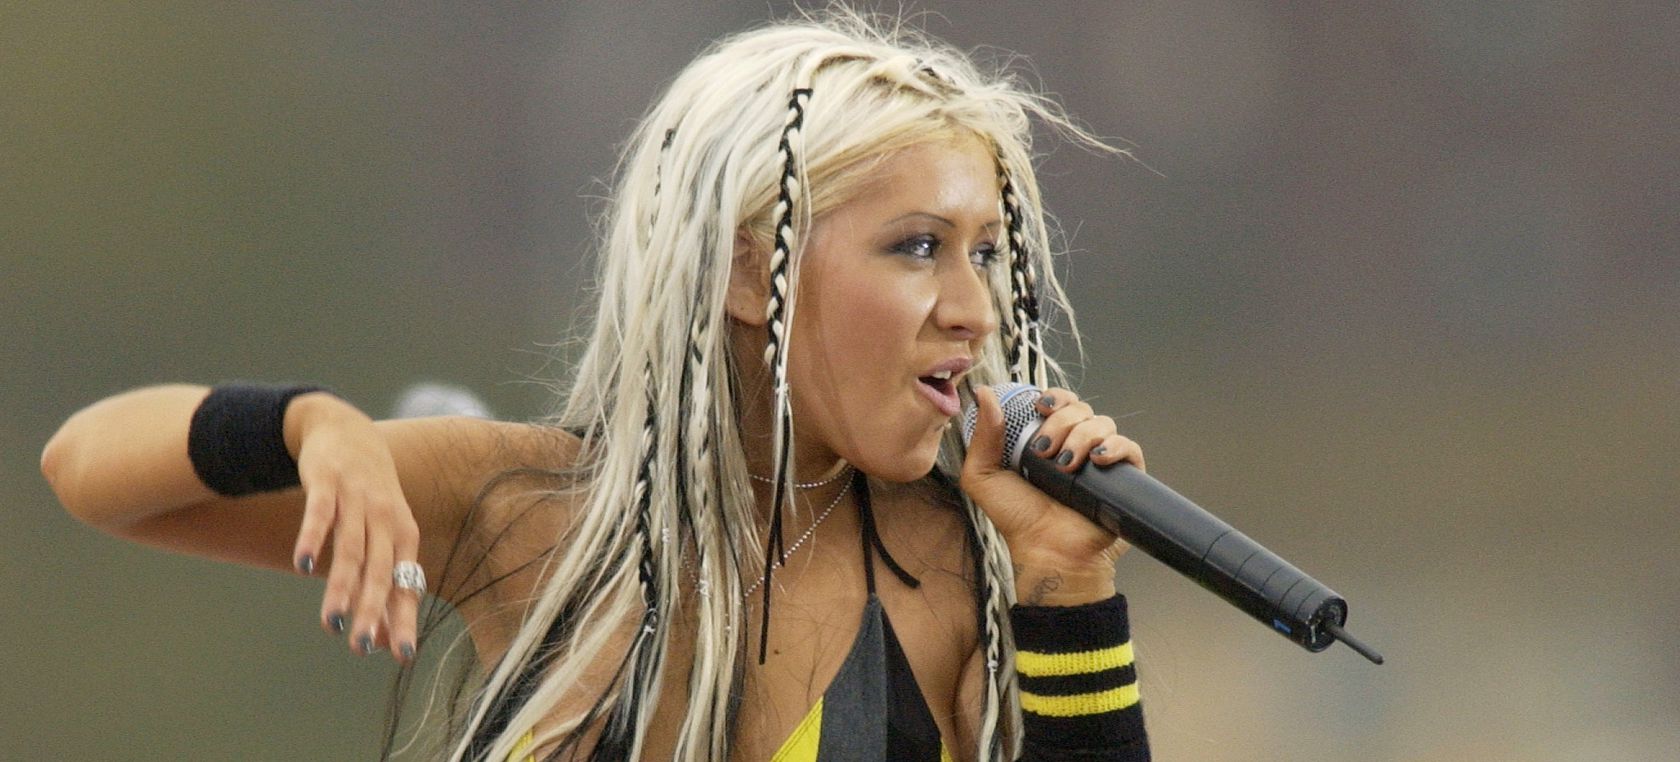 Christina Aguilera posa en topless para recrear la portada de ‘Stripped’